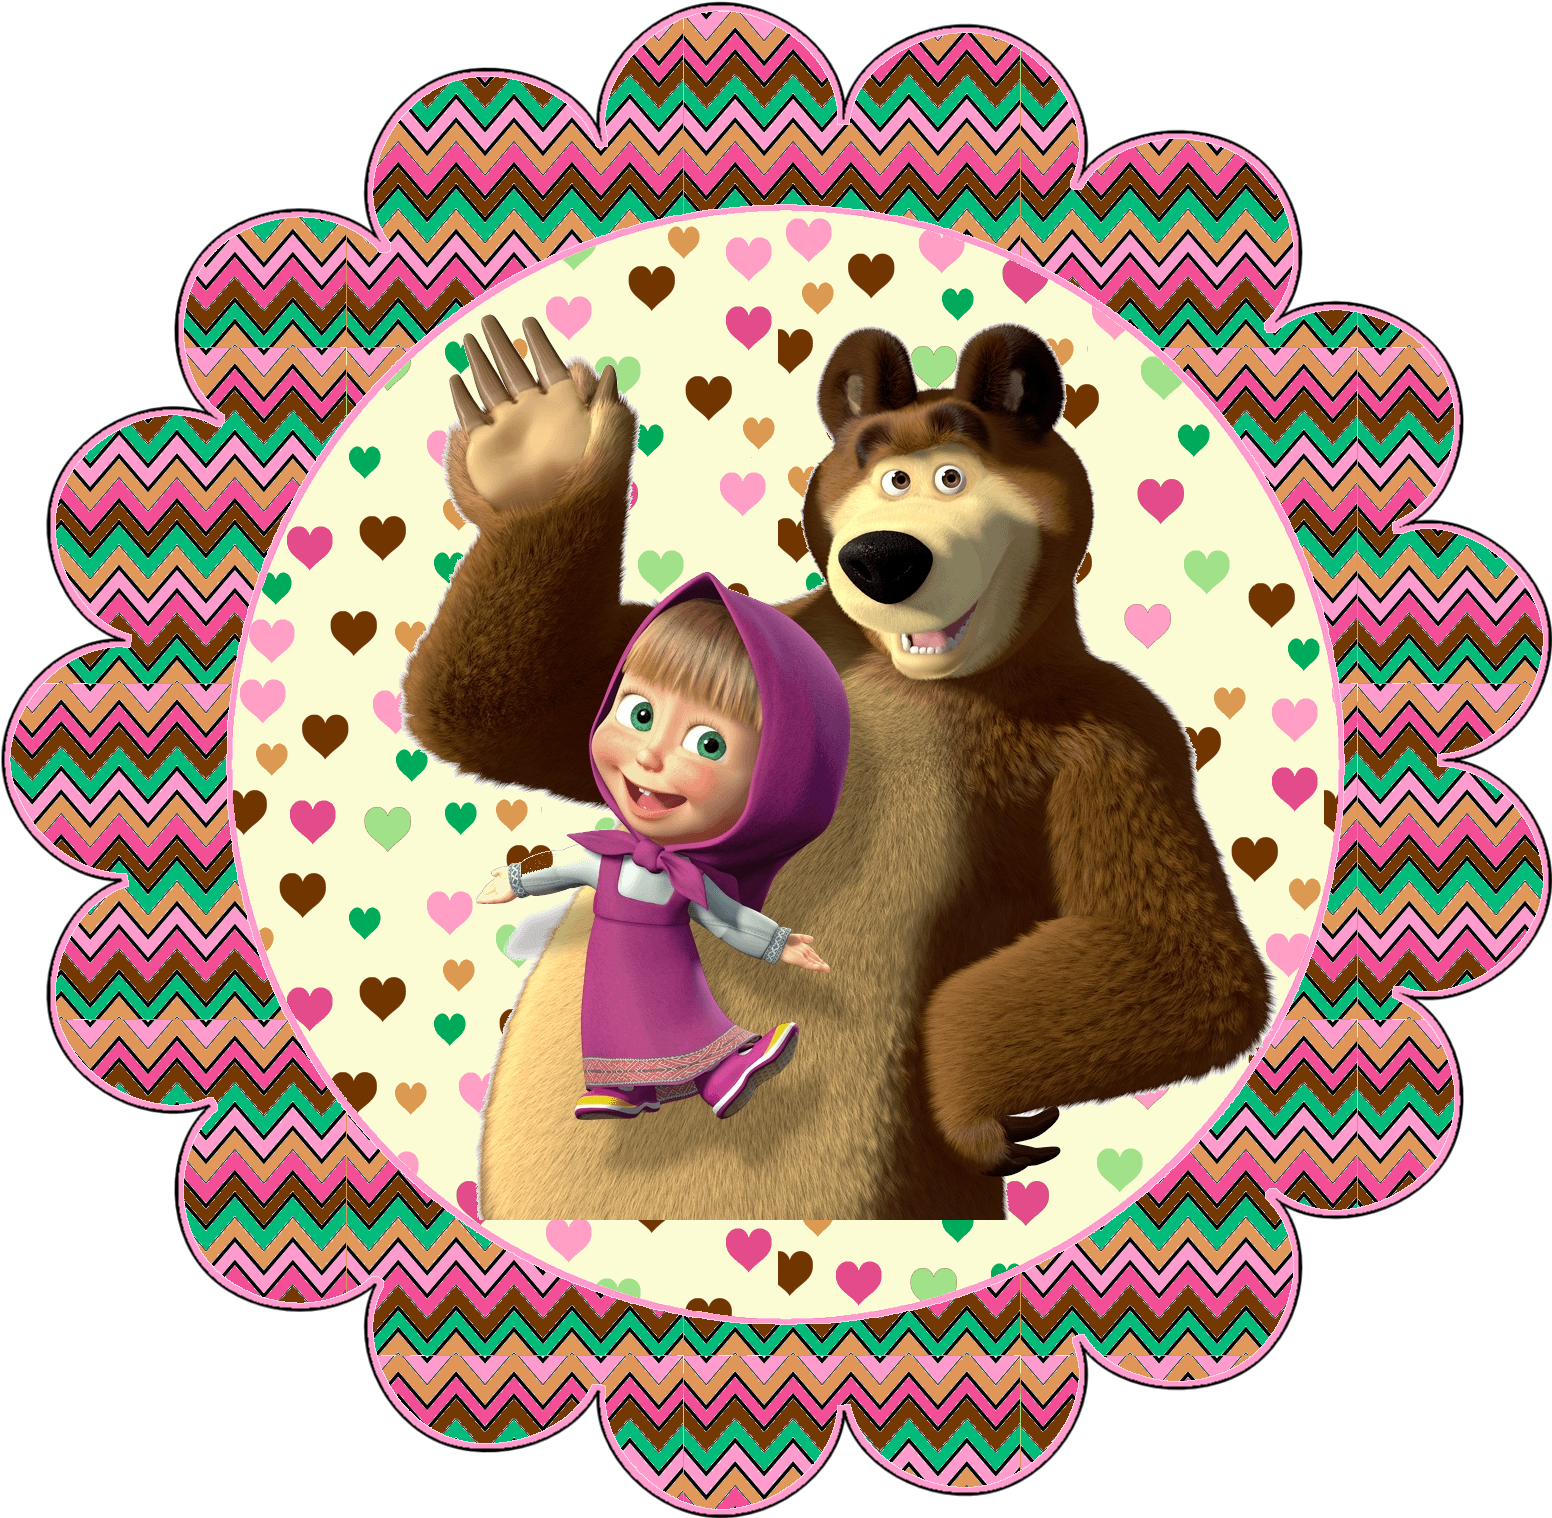 Masha e urso. Маша и медведь. Стикеры Маша и медведь. Маша и медведь картинки. Машка и медведь картинки.